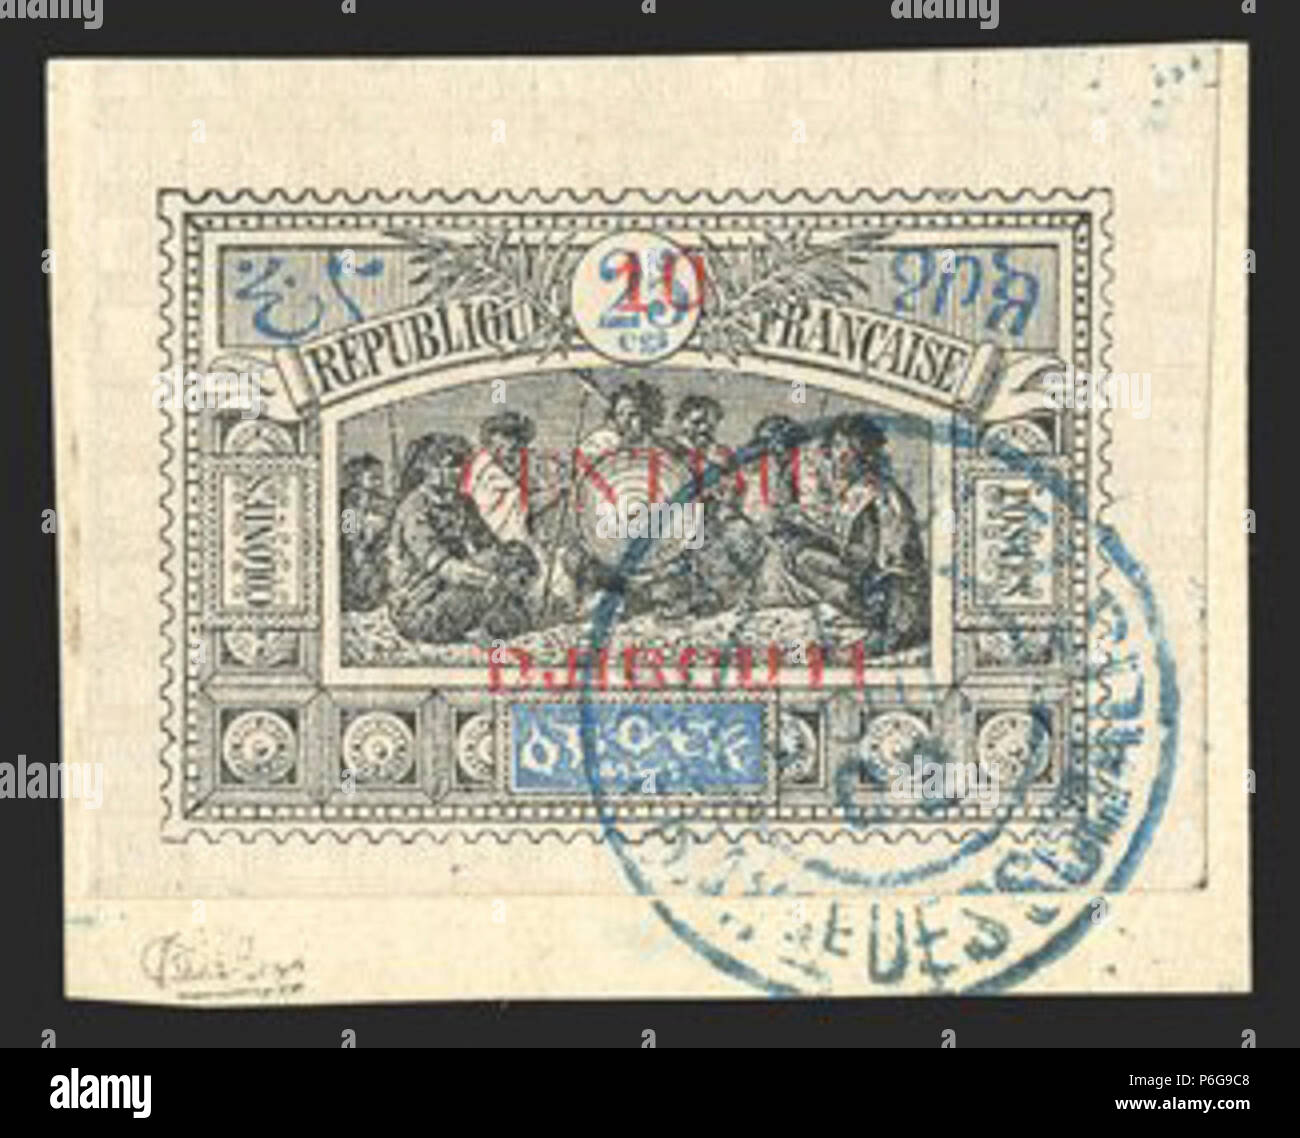 Почтовые марки Djibouti. Почтовые марки Сомали. Почтовые марки Республика Джибути. Кост (1902 г.). Укажите российского монарха изображенного на почтовом блоке